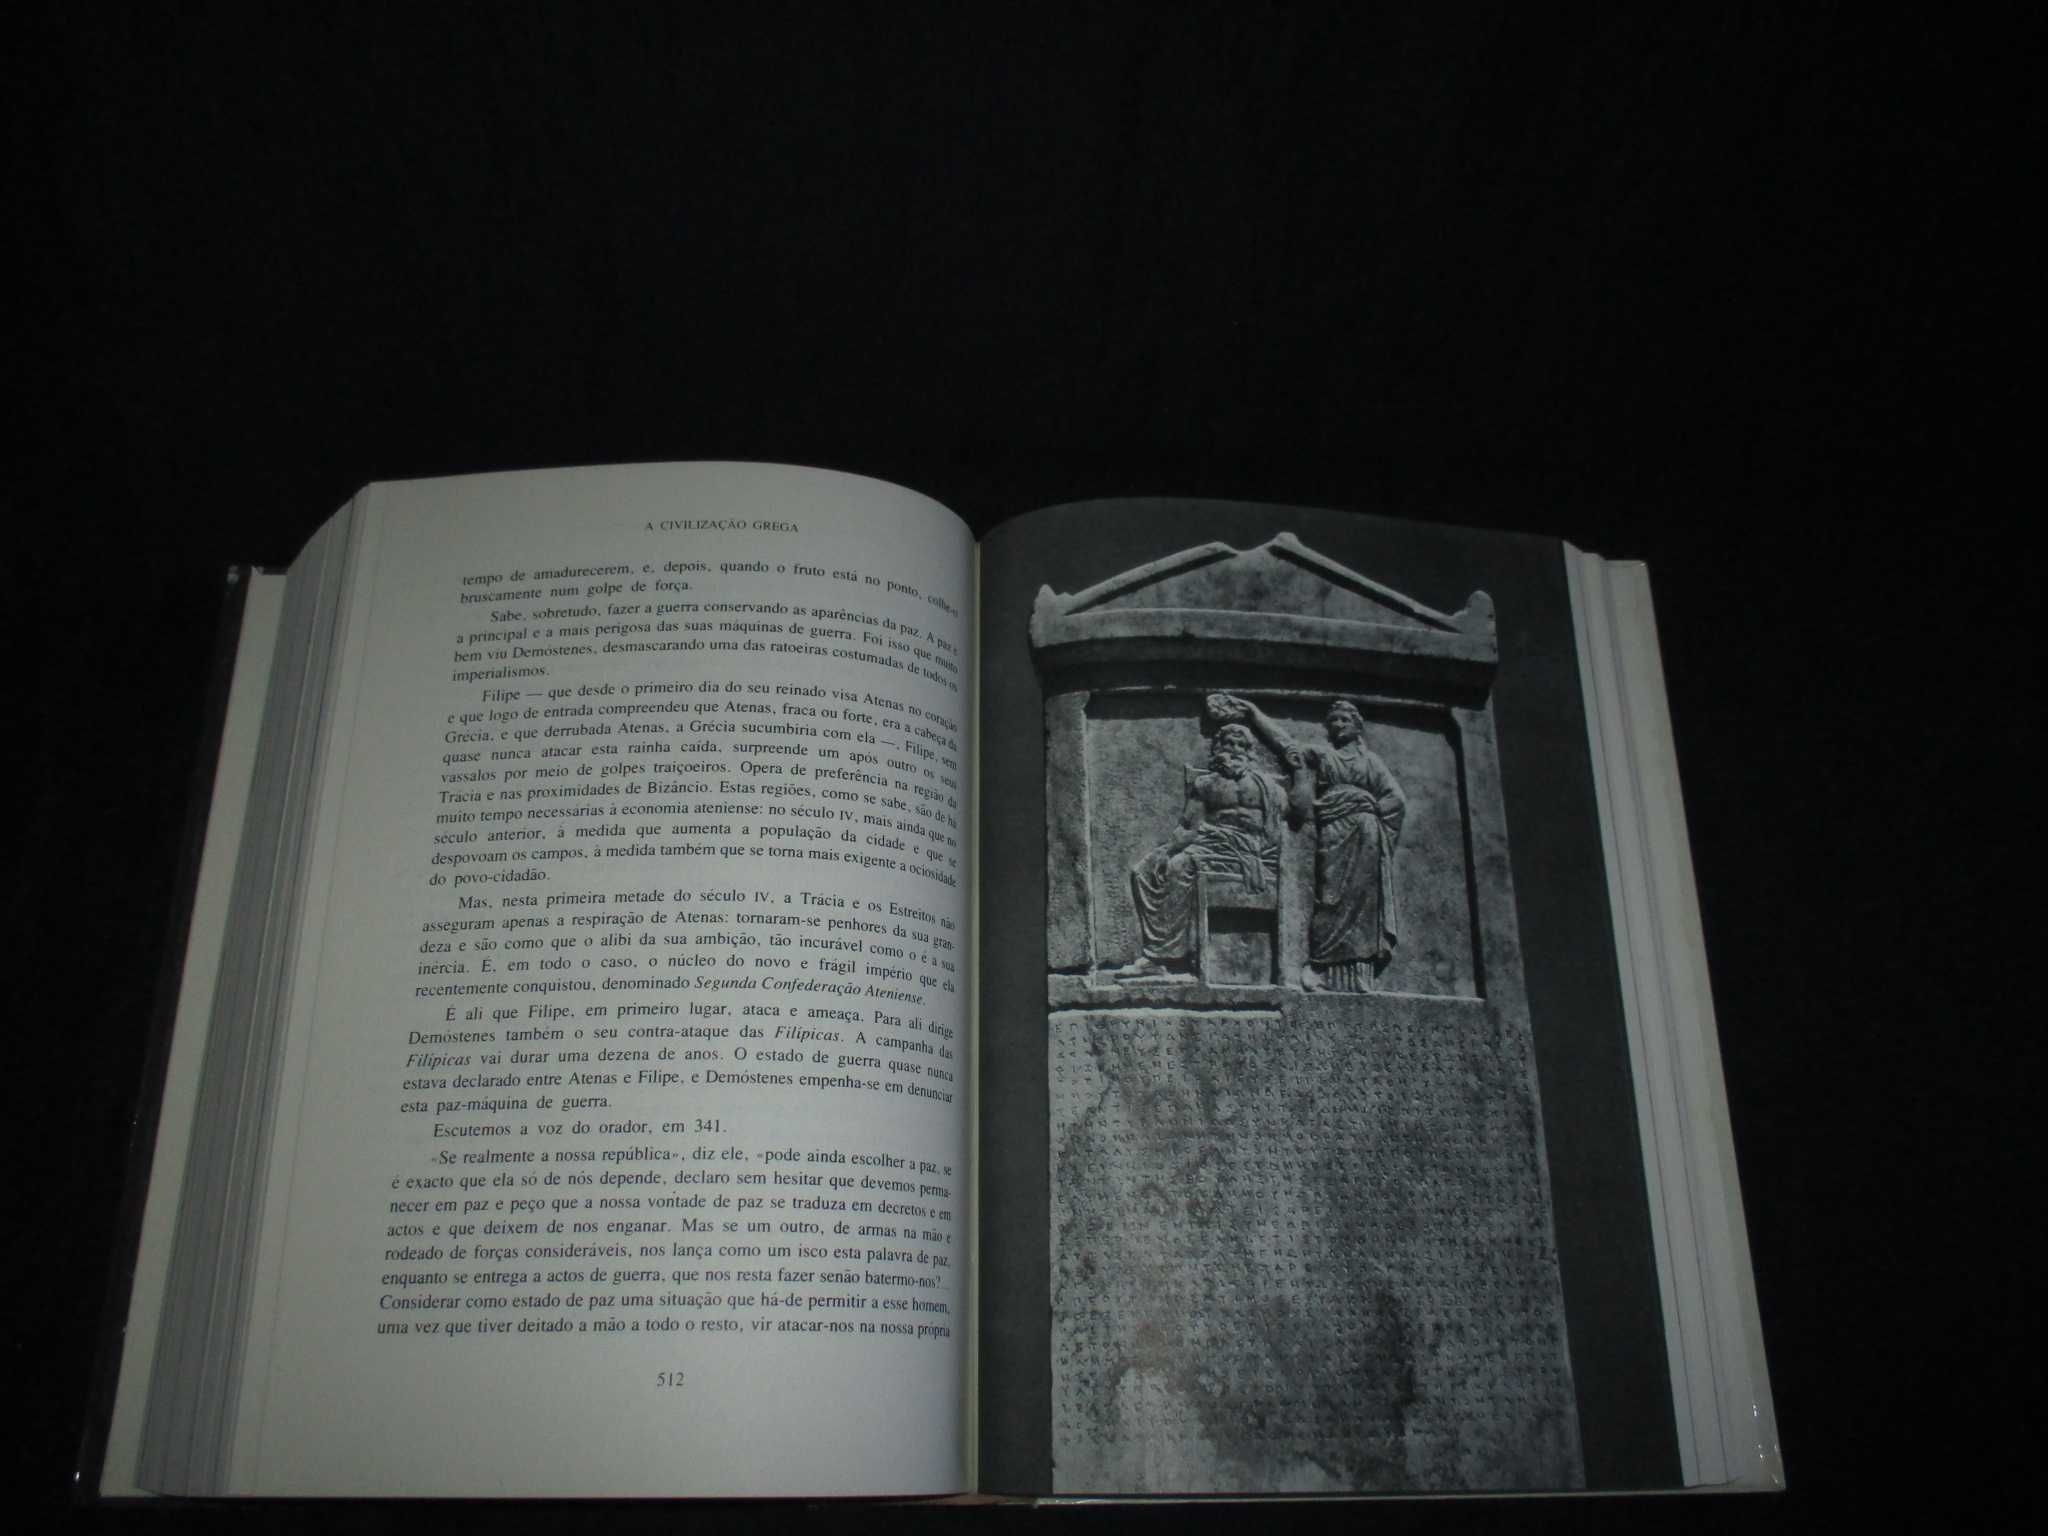 Livro A Civilização Grega André Bonnard CD